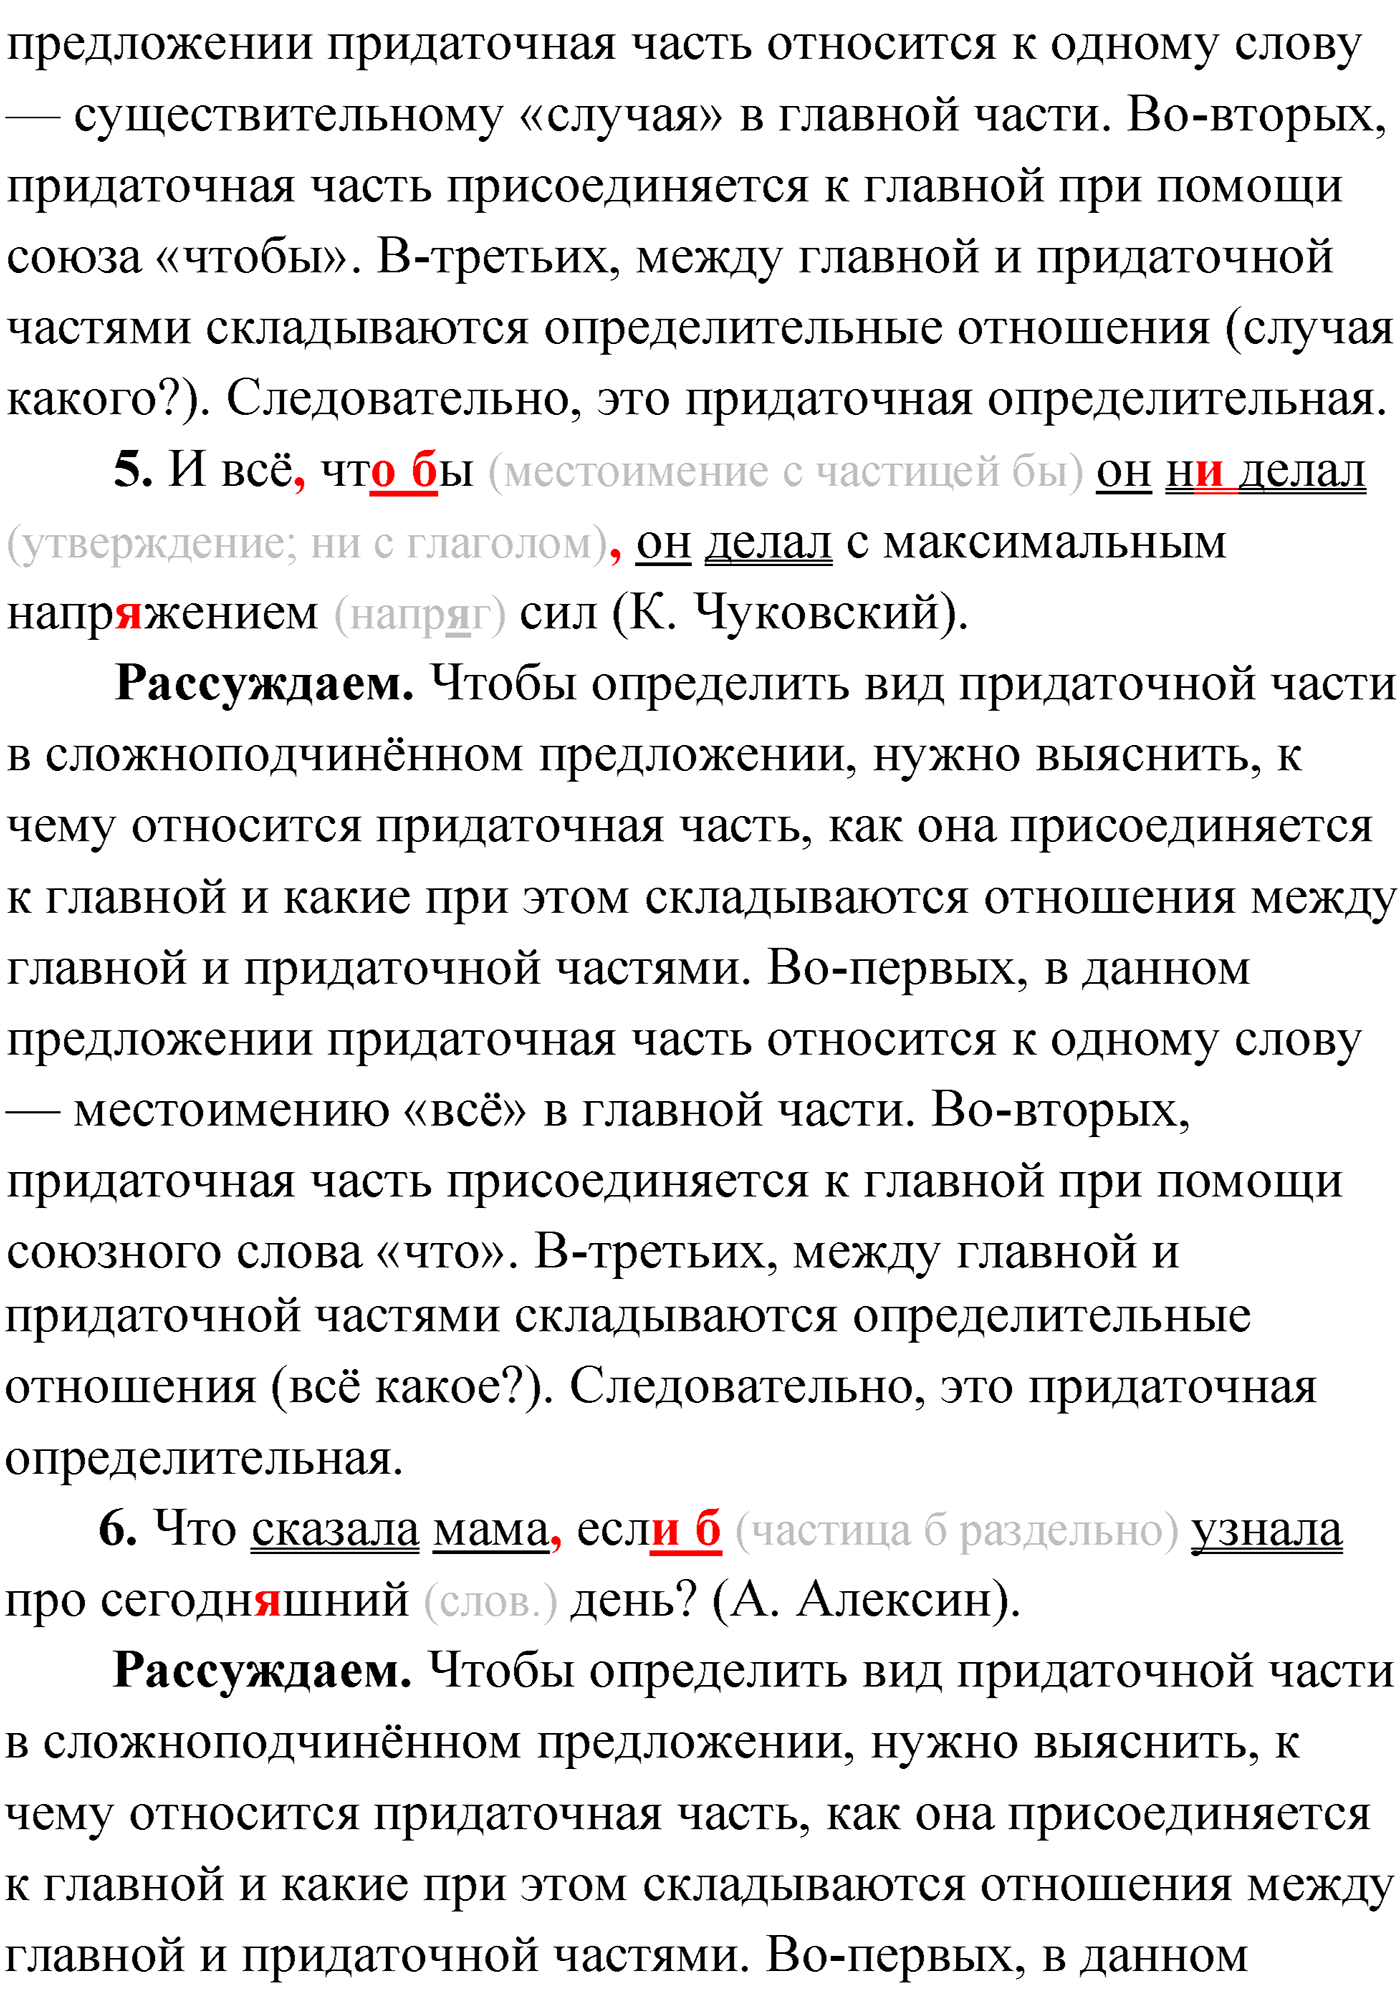 упражнение №186 русский язык 9 класс Мурина 2019 год